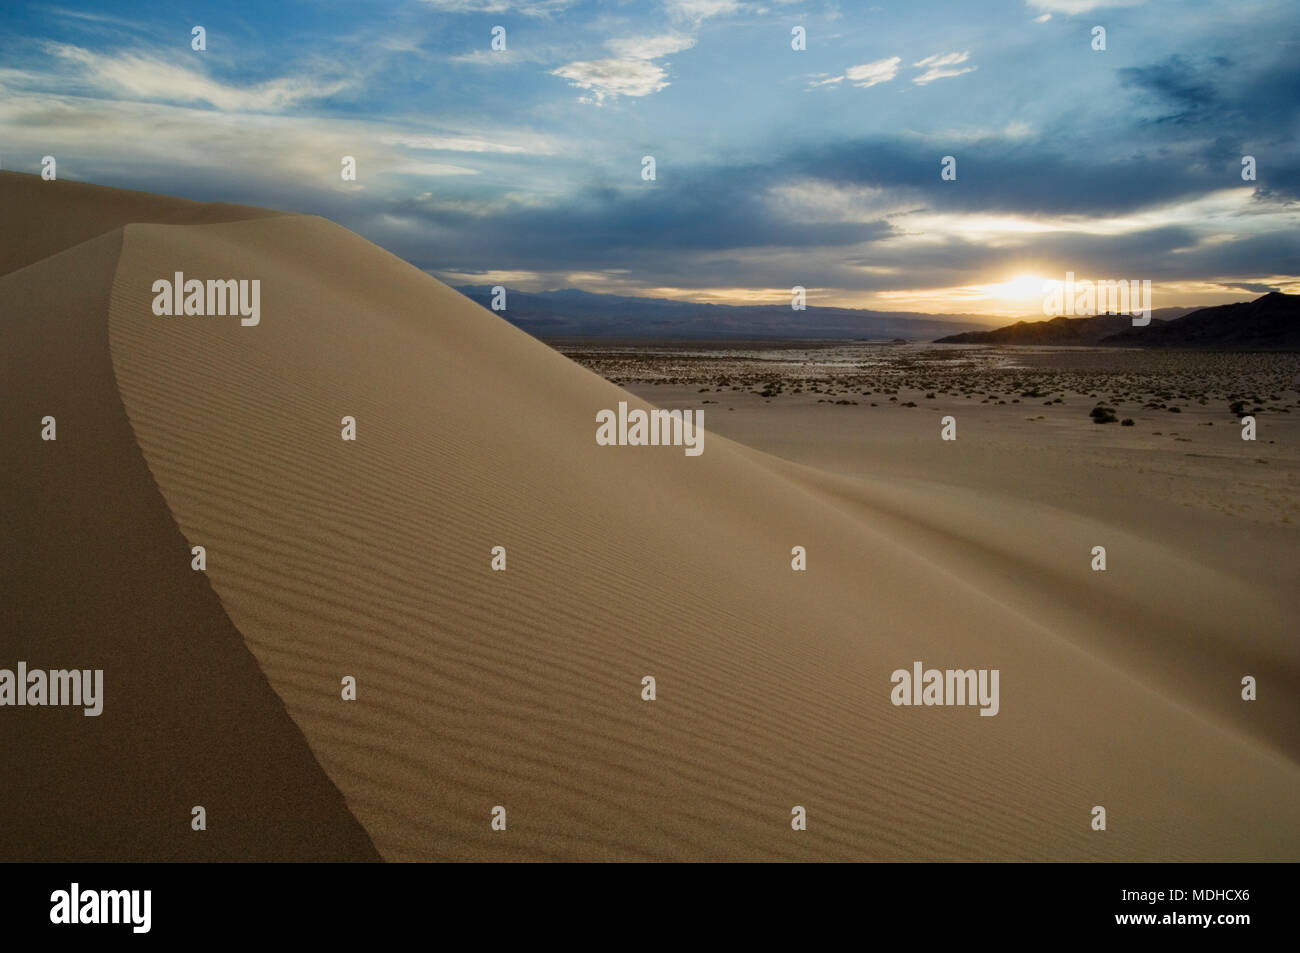 Die geschwungene Bergrücken von Sand zeigt die Licht- und Schattenseiten einer Düne in Ibex Dünen, Kalifornien. Stockfoto